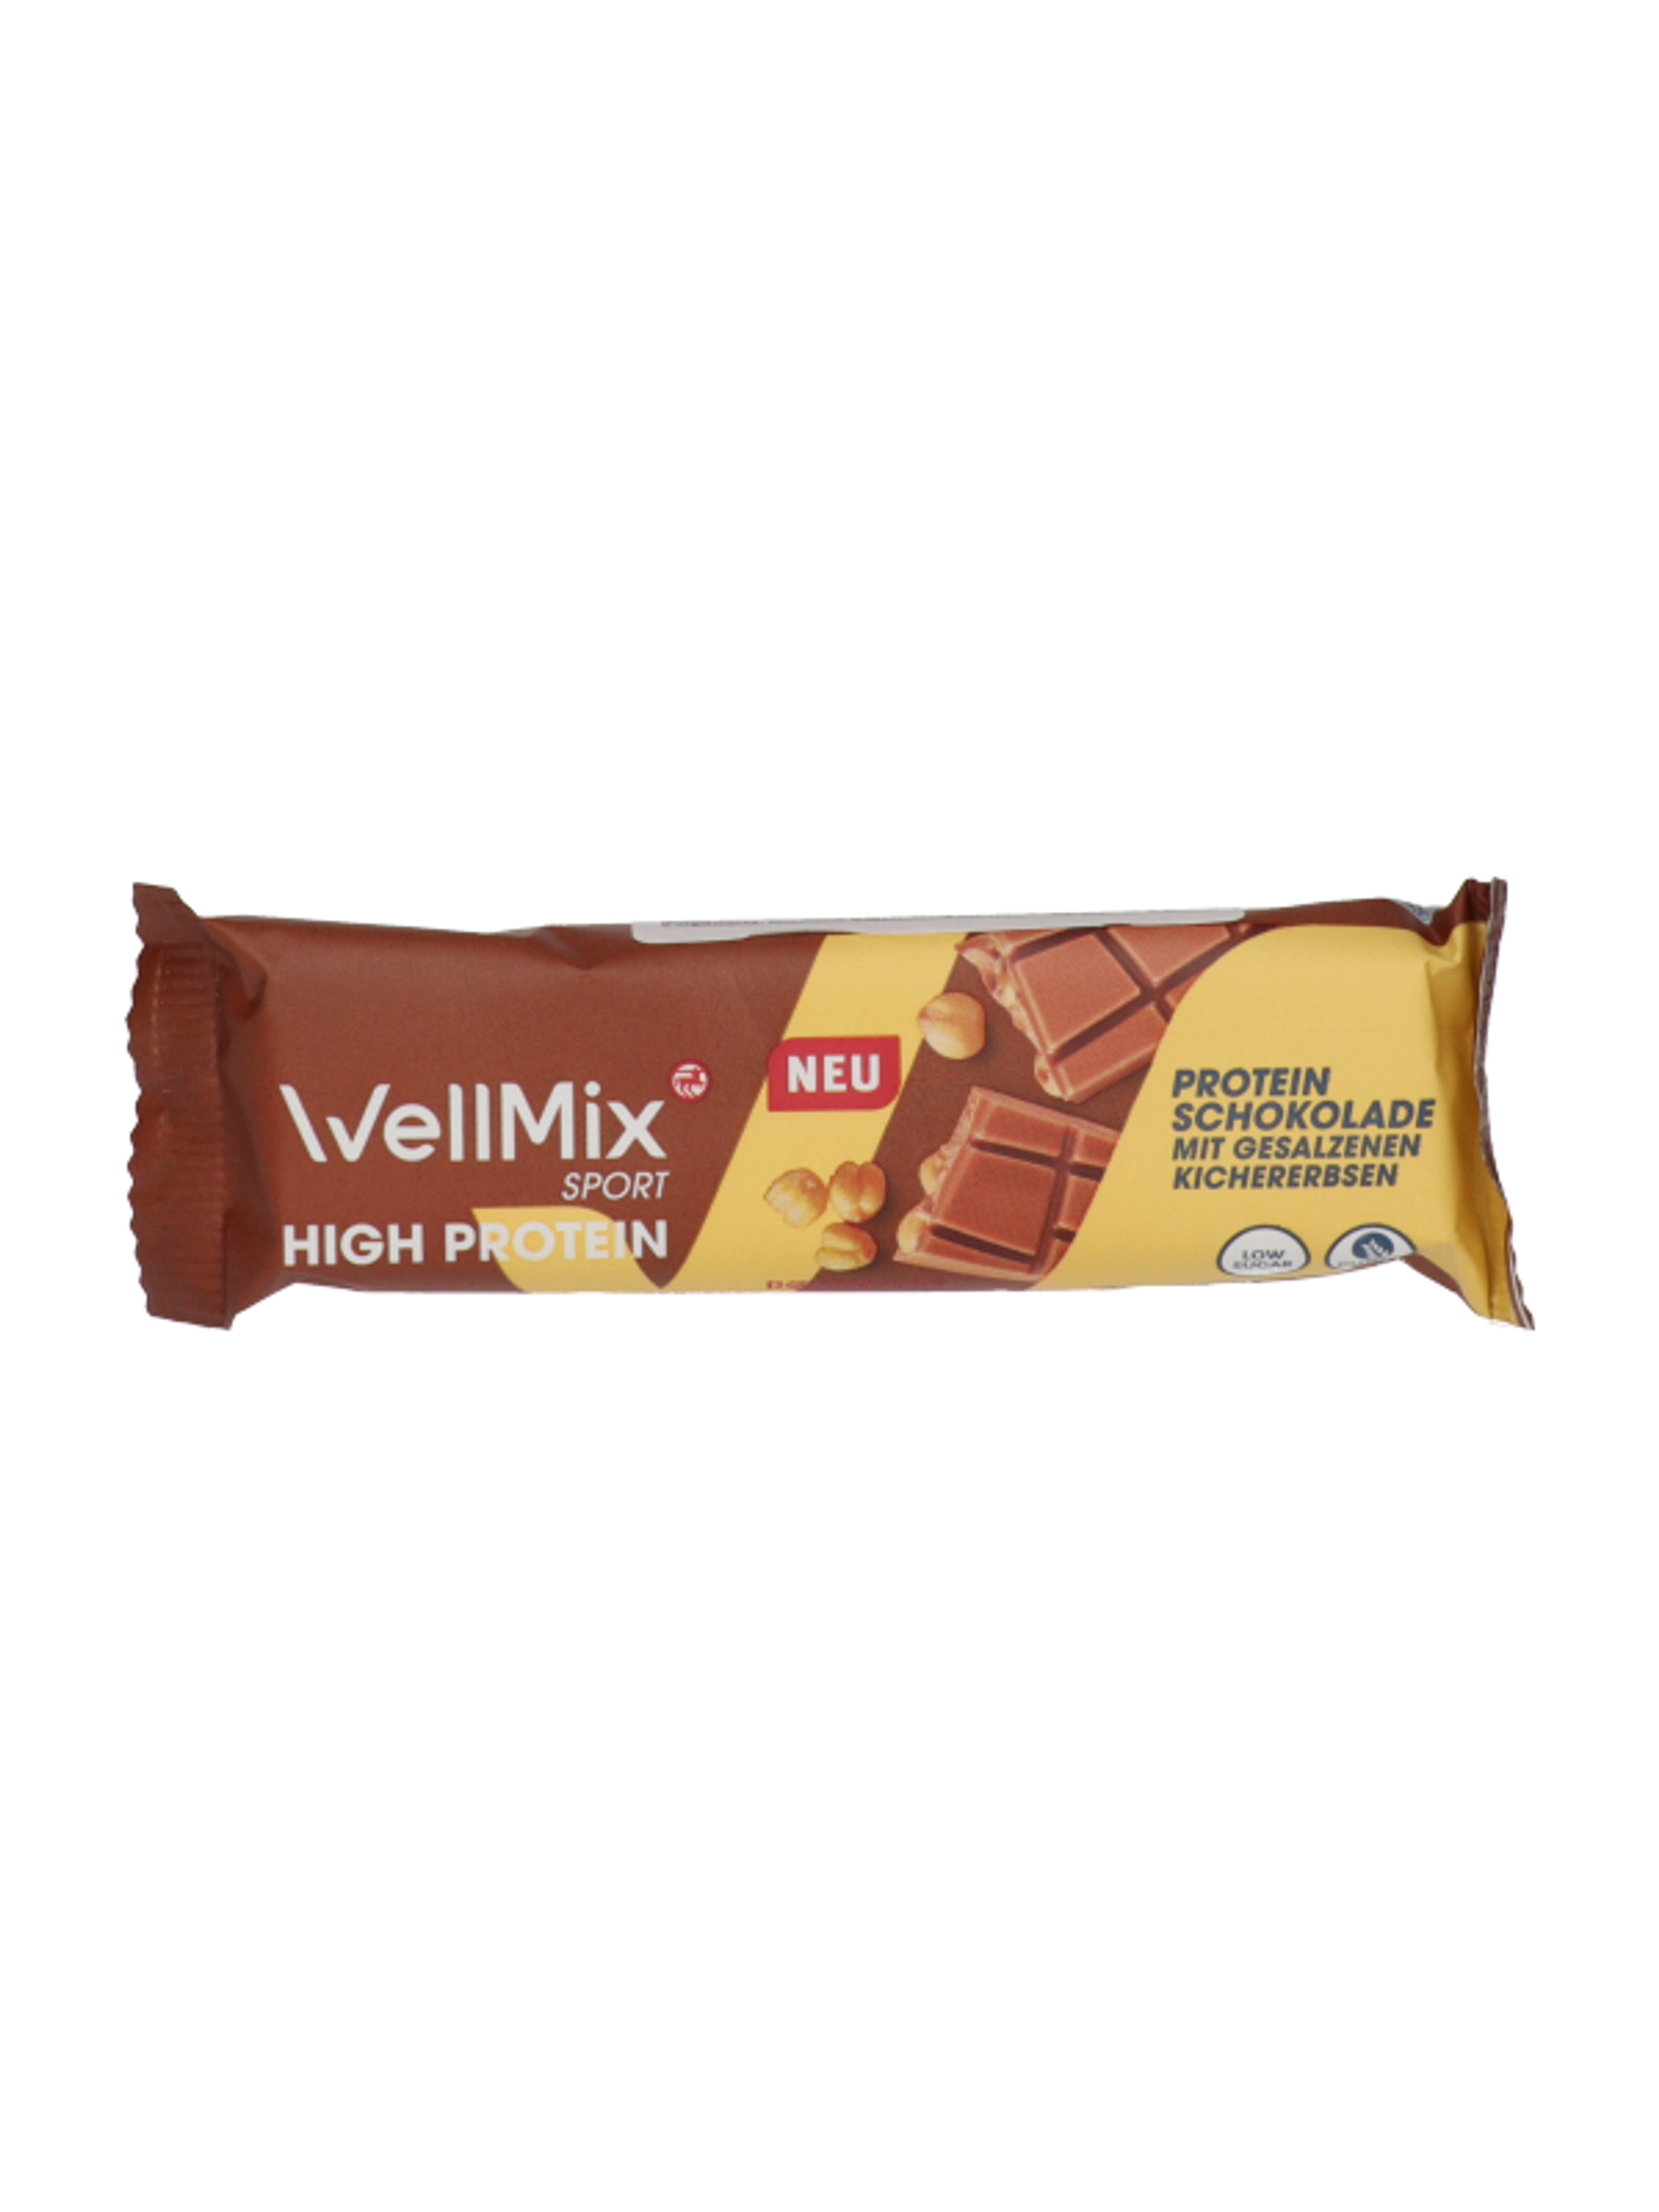 Well Mix csokis protein szelet - 40 g